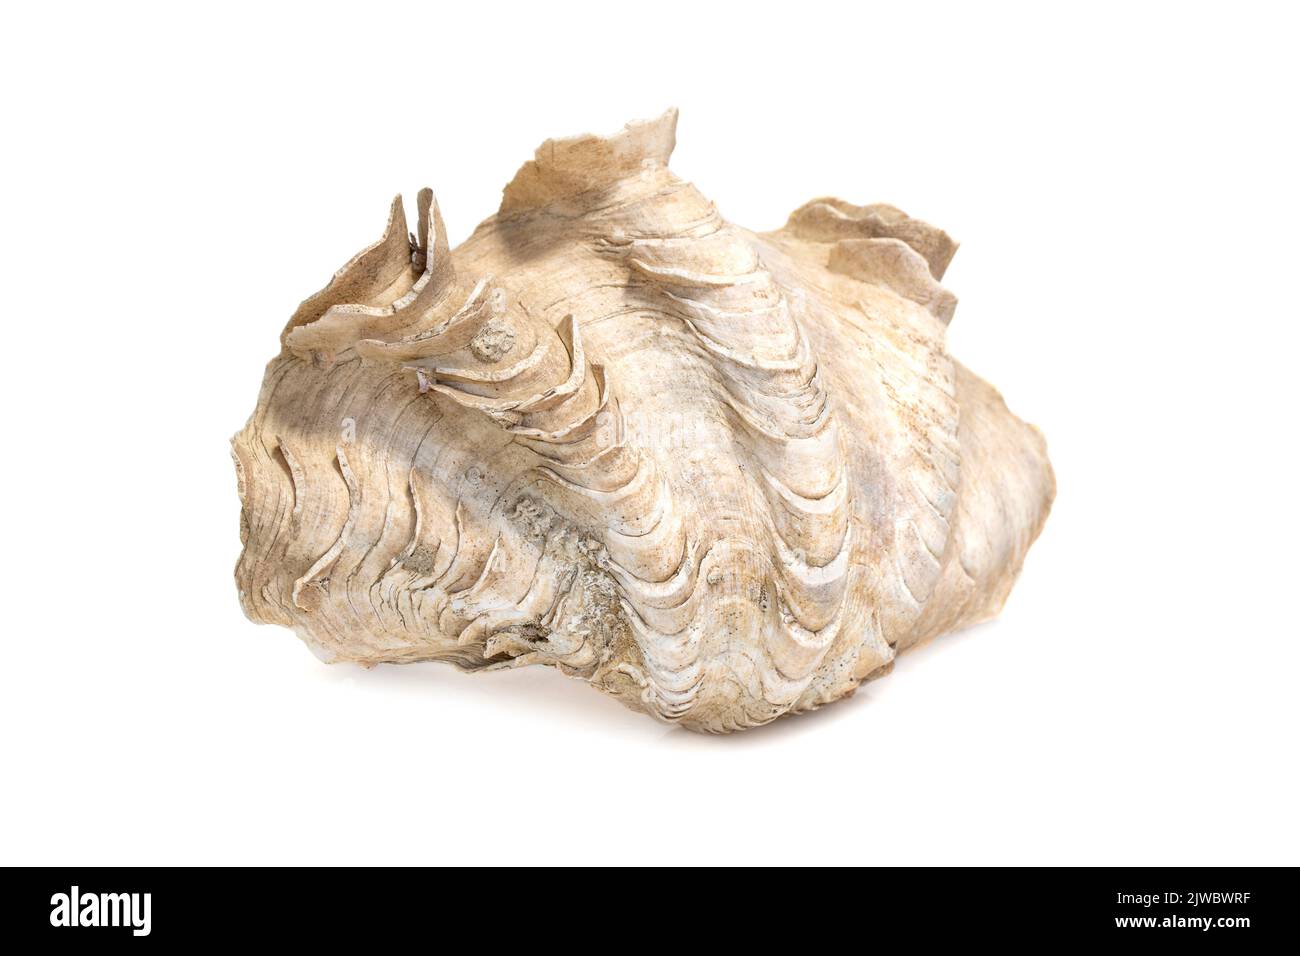 Abbildung der Krokus-Riesenmuschel (Tridacna crocea) auf weißem Hintergrund. Muscheln. Unterwassertiere. Stockfoto